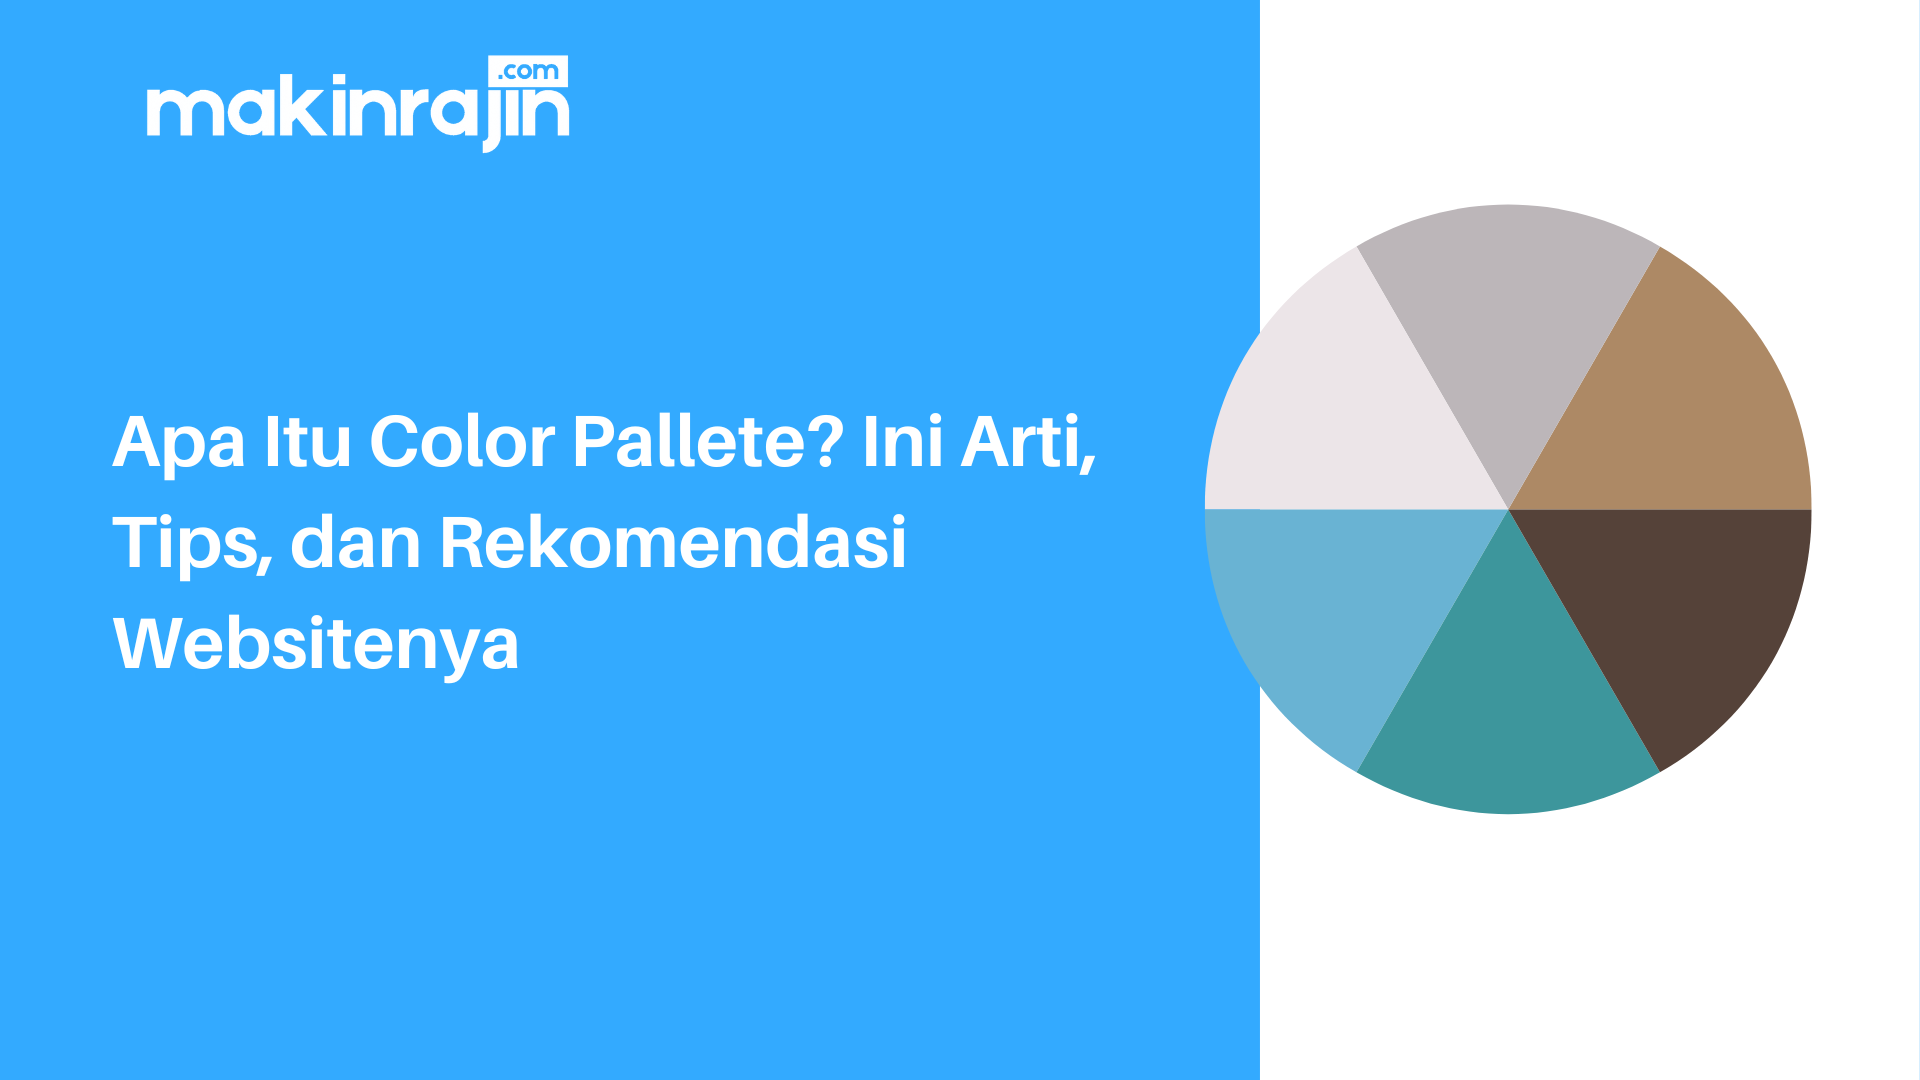 Apa Itu Color Pallete Ini Arti, Tips, dan Rekomendasi Websitenya